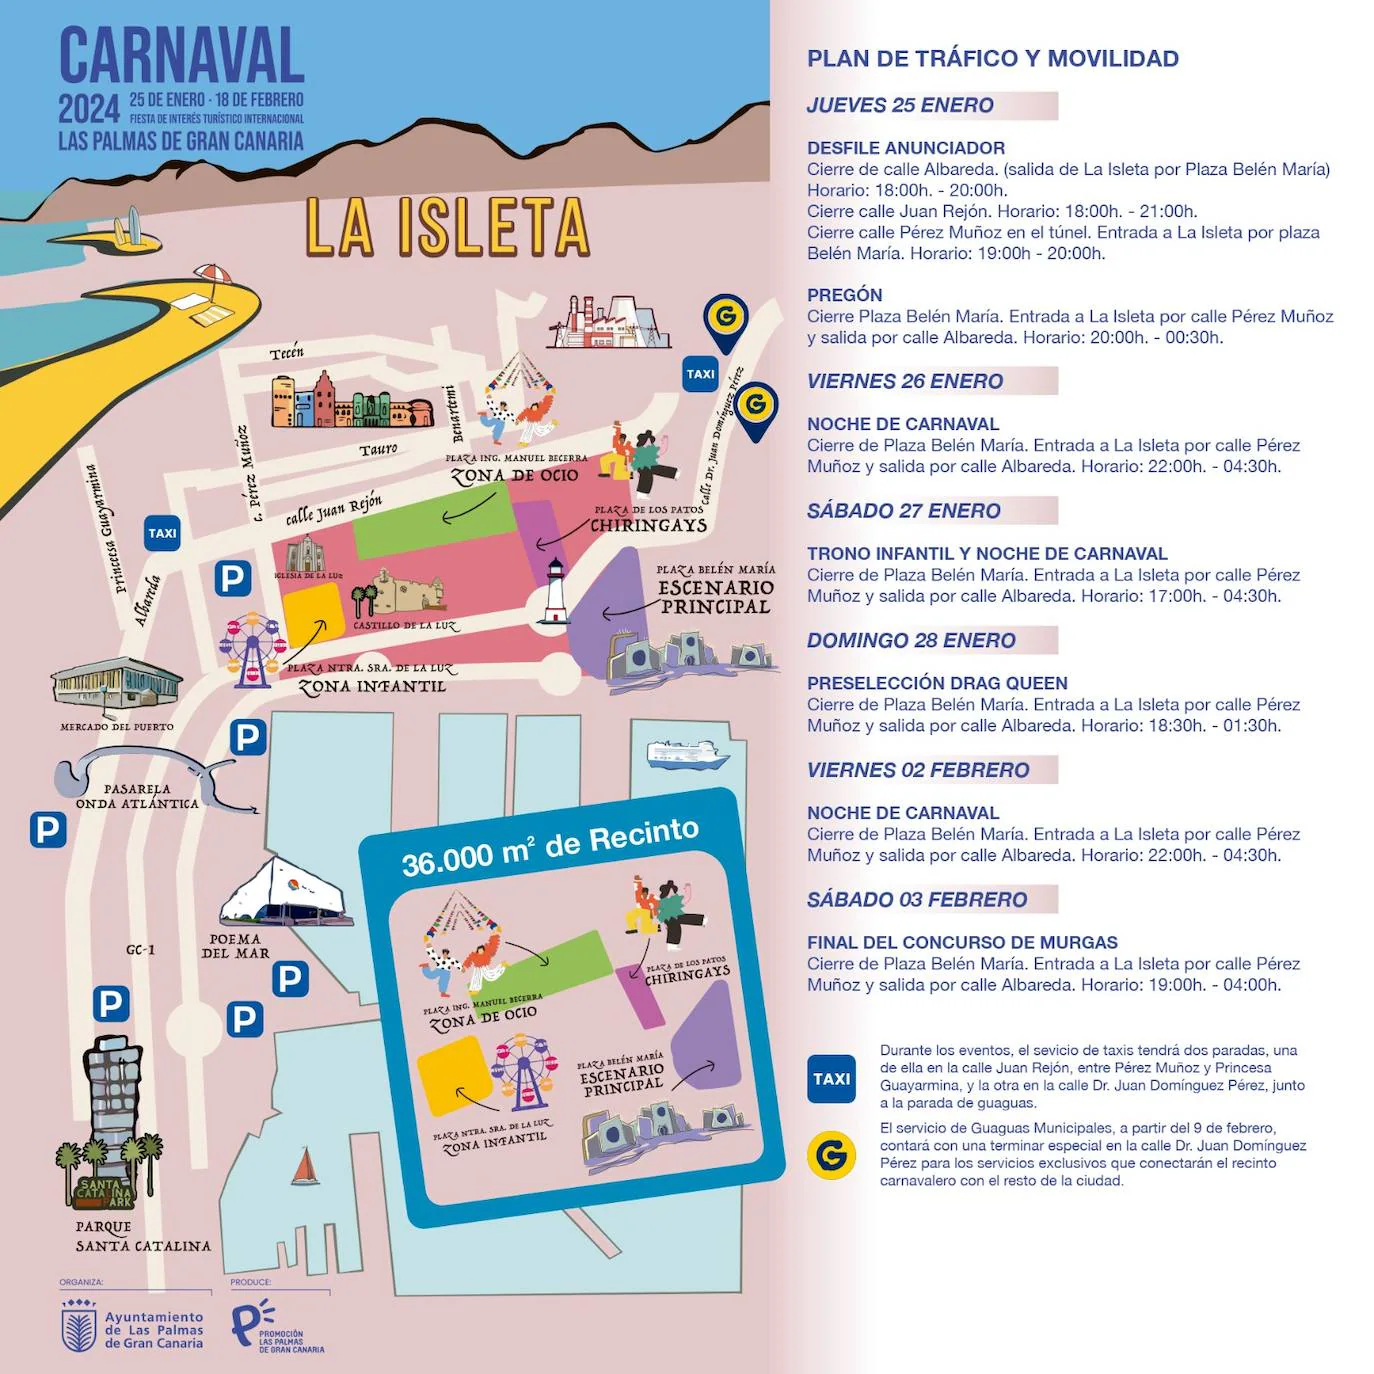 Los cortes de tráfico que provocará el Carnaval de Las Palmas de Gran Canaria.